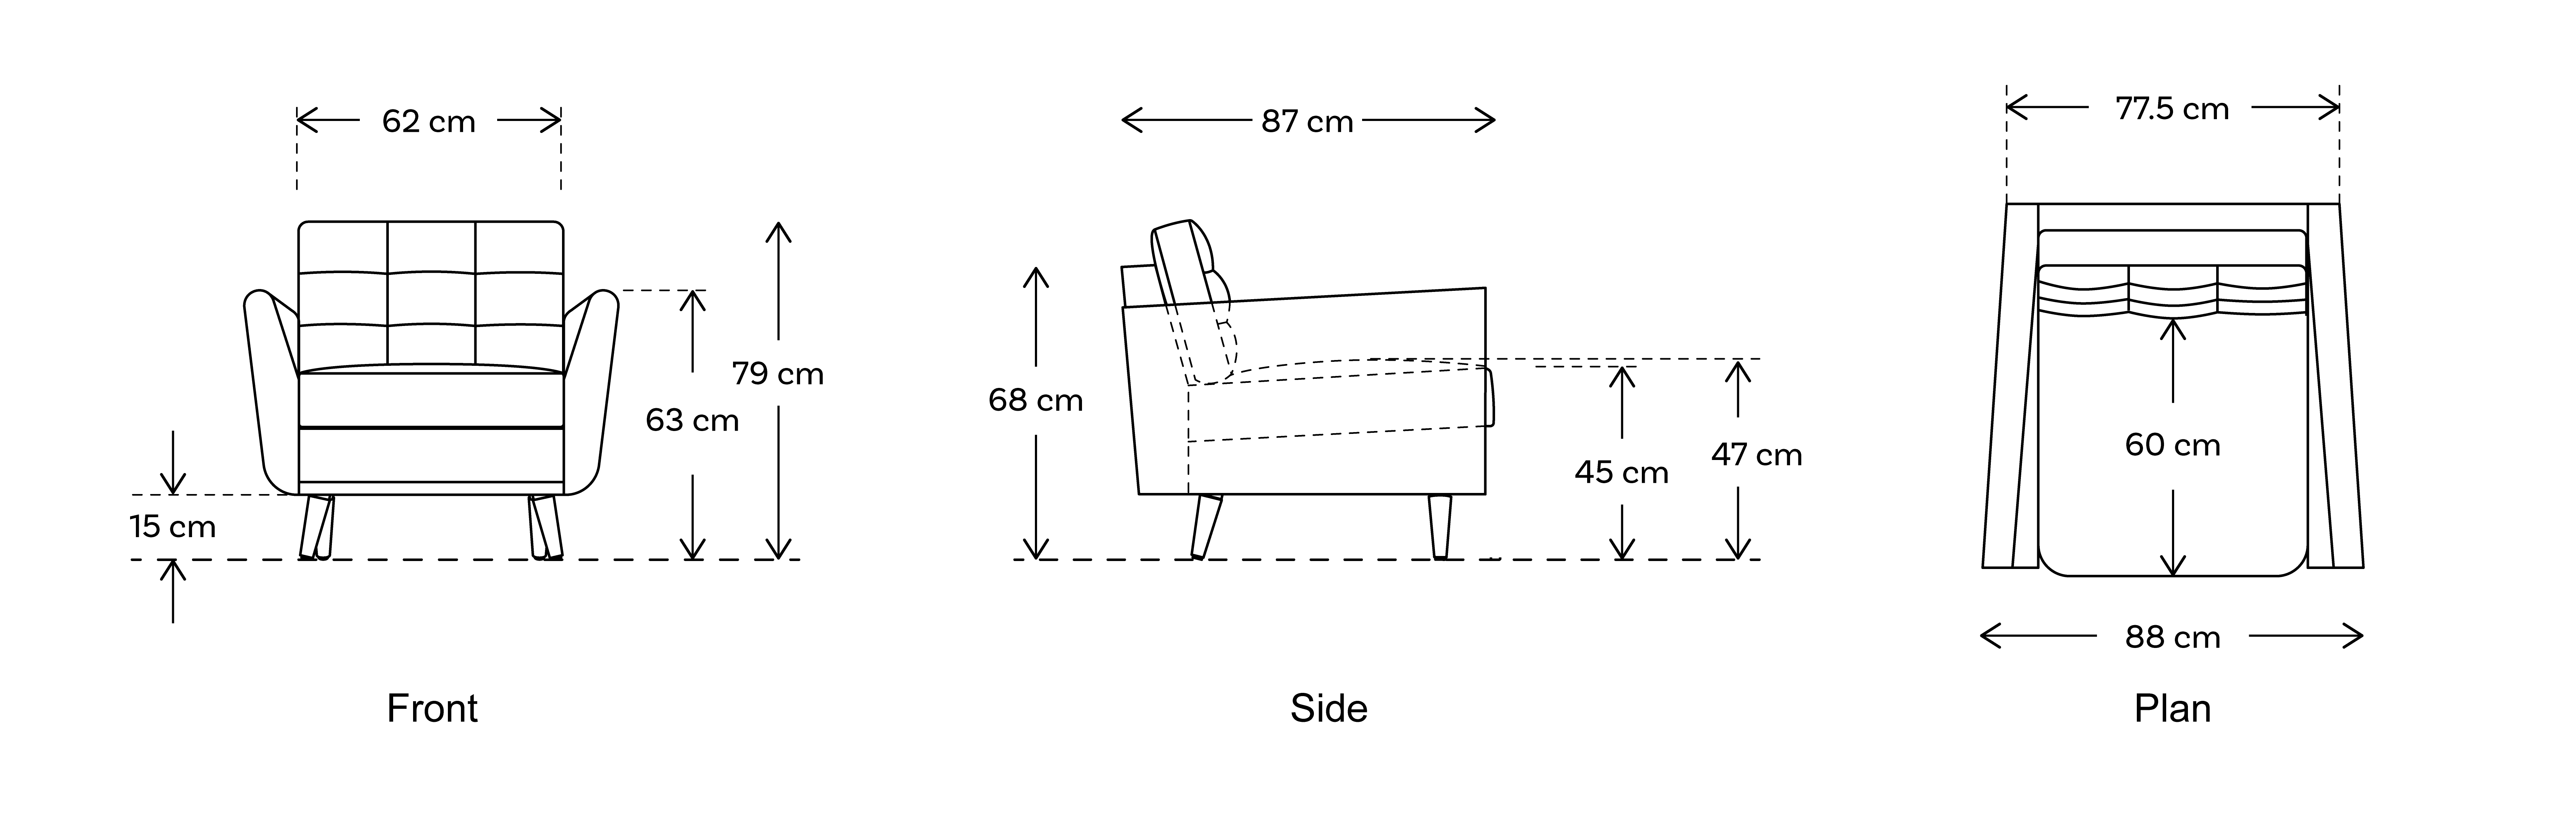 armchair sofa dimensions